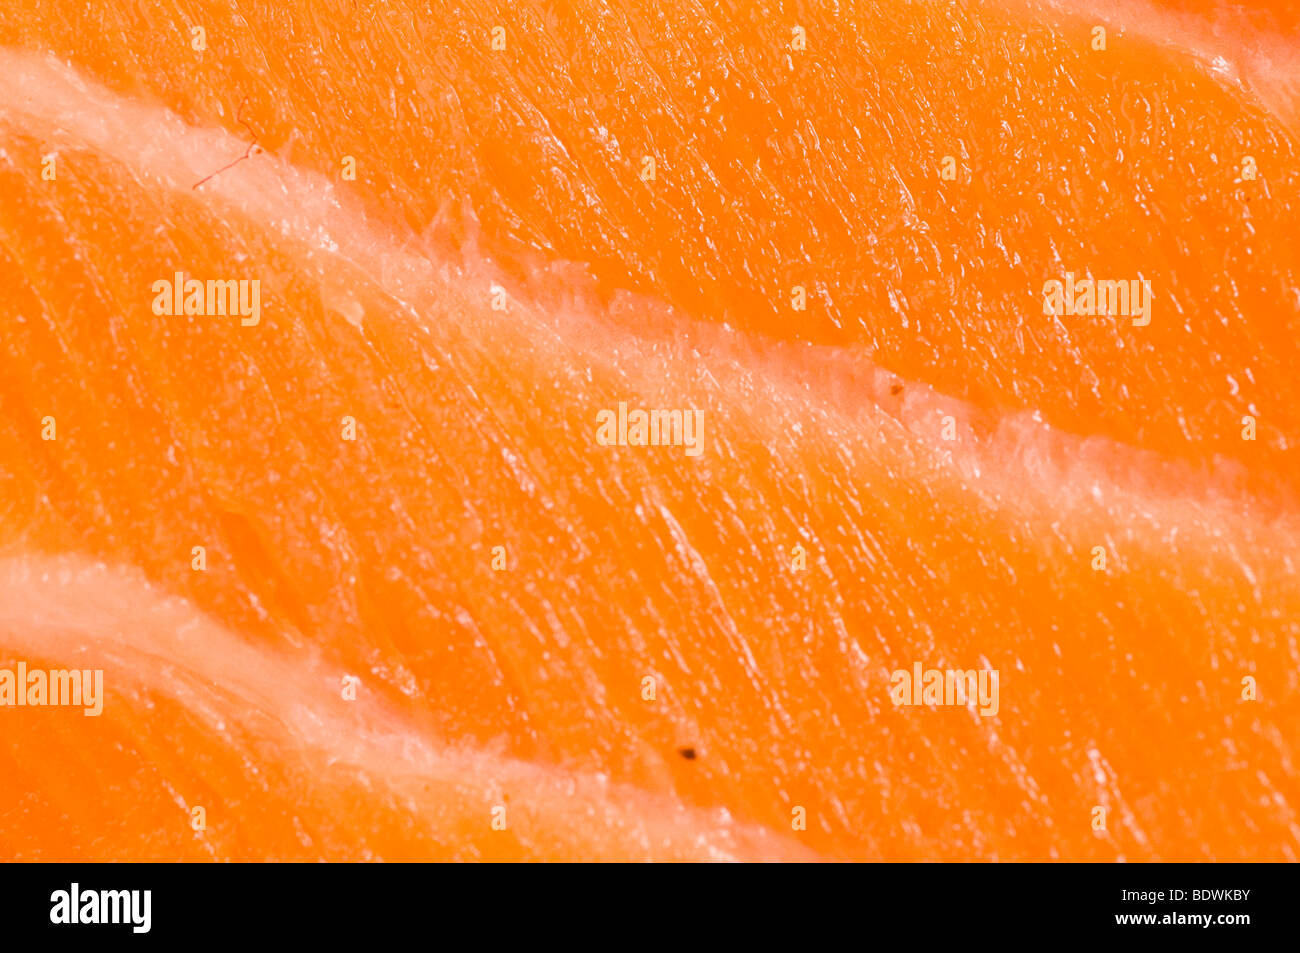 Filet de poisson saumon cru Banque D'Images